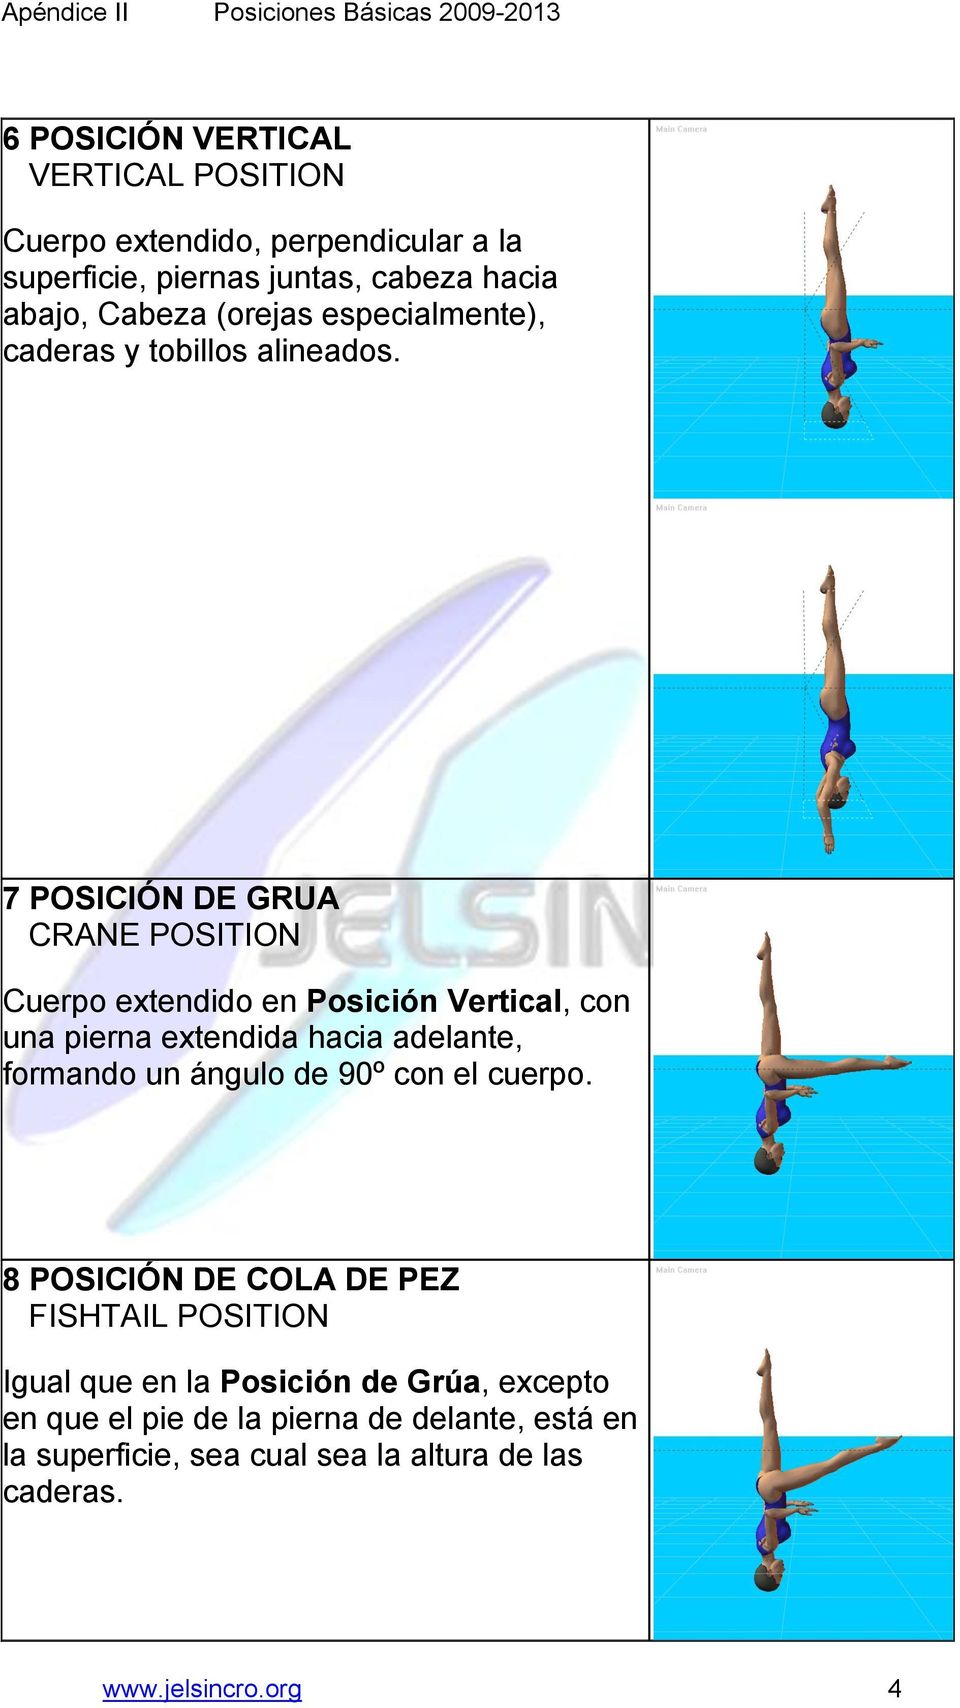 7 POSICIÓN DE GRUA CRANE POSITION Cuerpo extendido en Posición Vertical, con una pierna extendida hacia adelante, formando un ángulo de